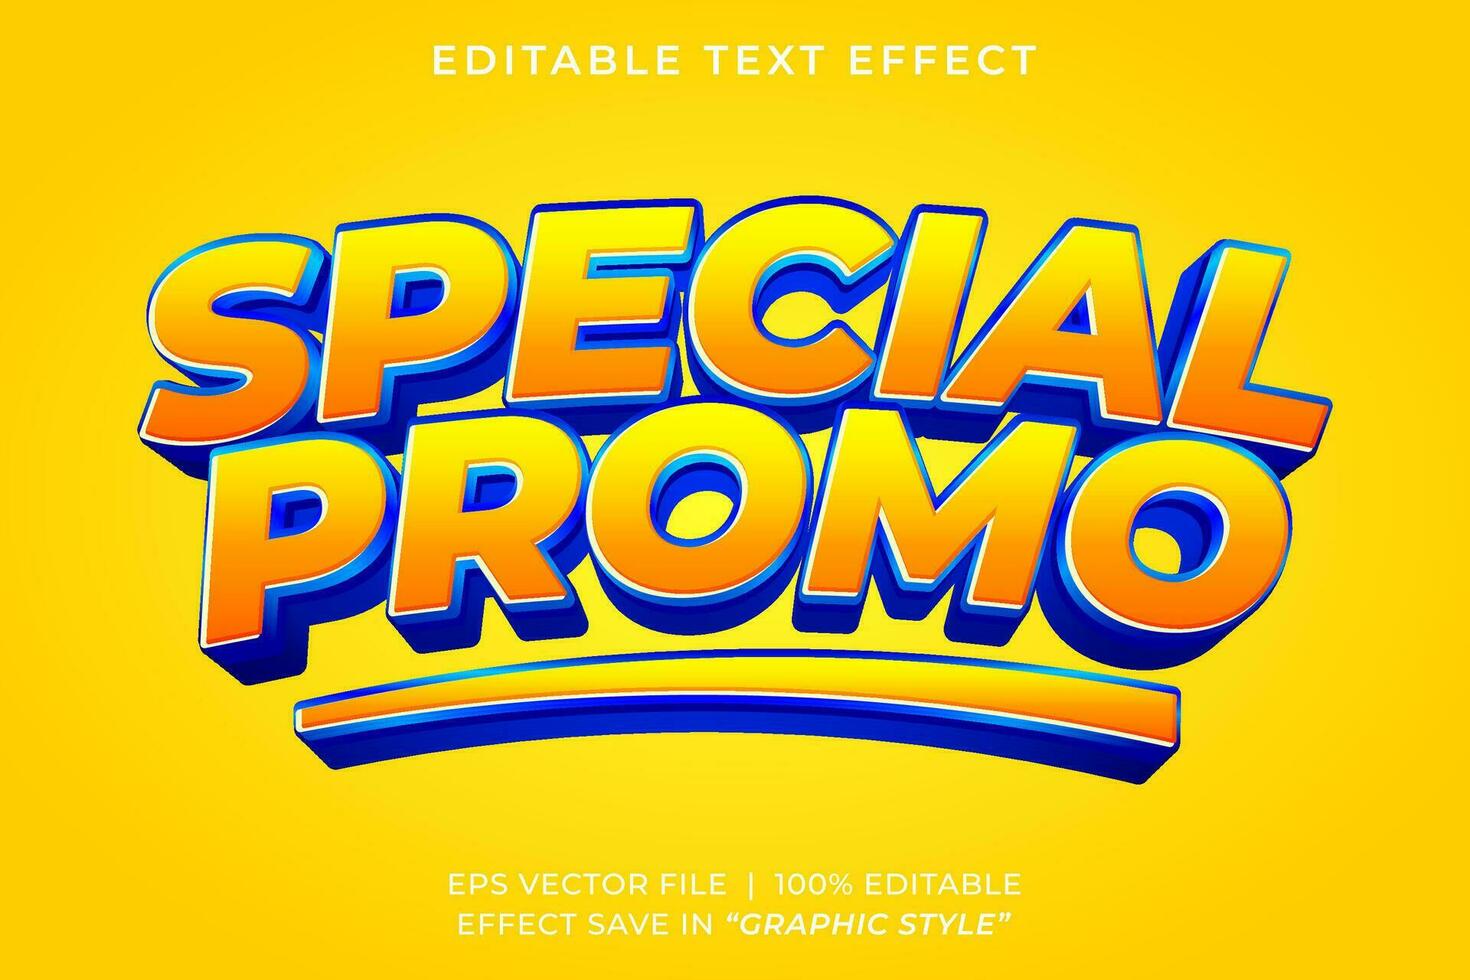 spécial vente promo 3d modifiable texte effet modèle vecteur